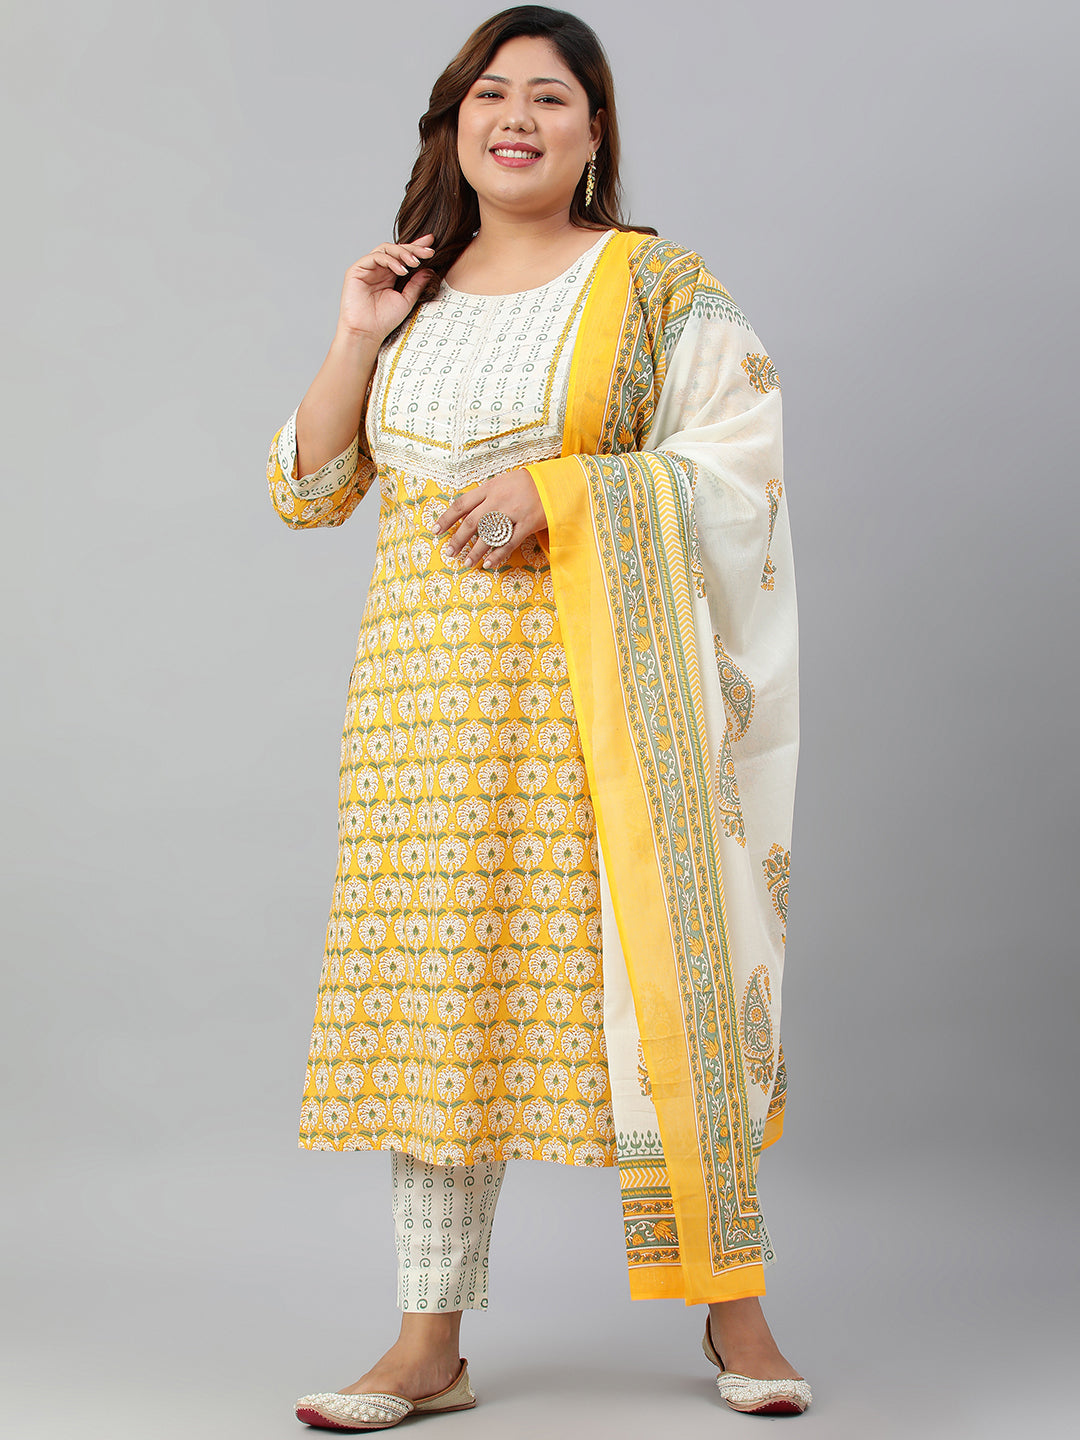 Janasya XL LOVE by Janasya Women's Plus Size Yellow Cotton Kurta With Pants and Dupatta - Distacart